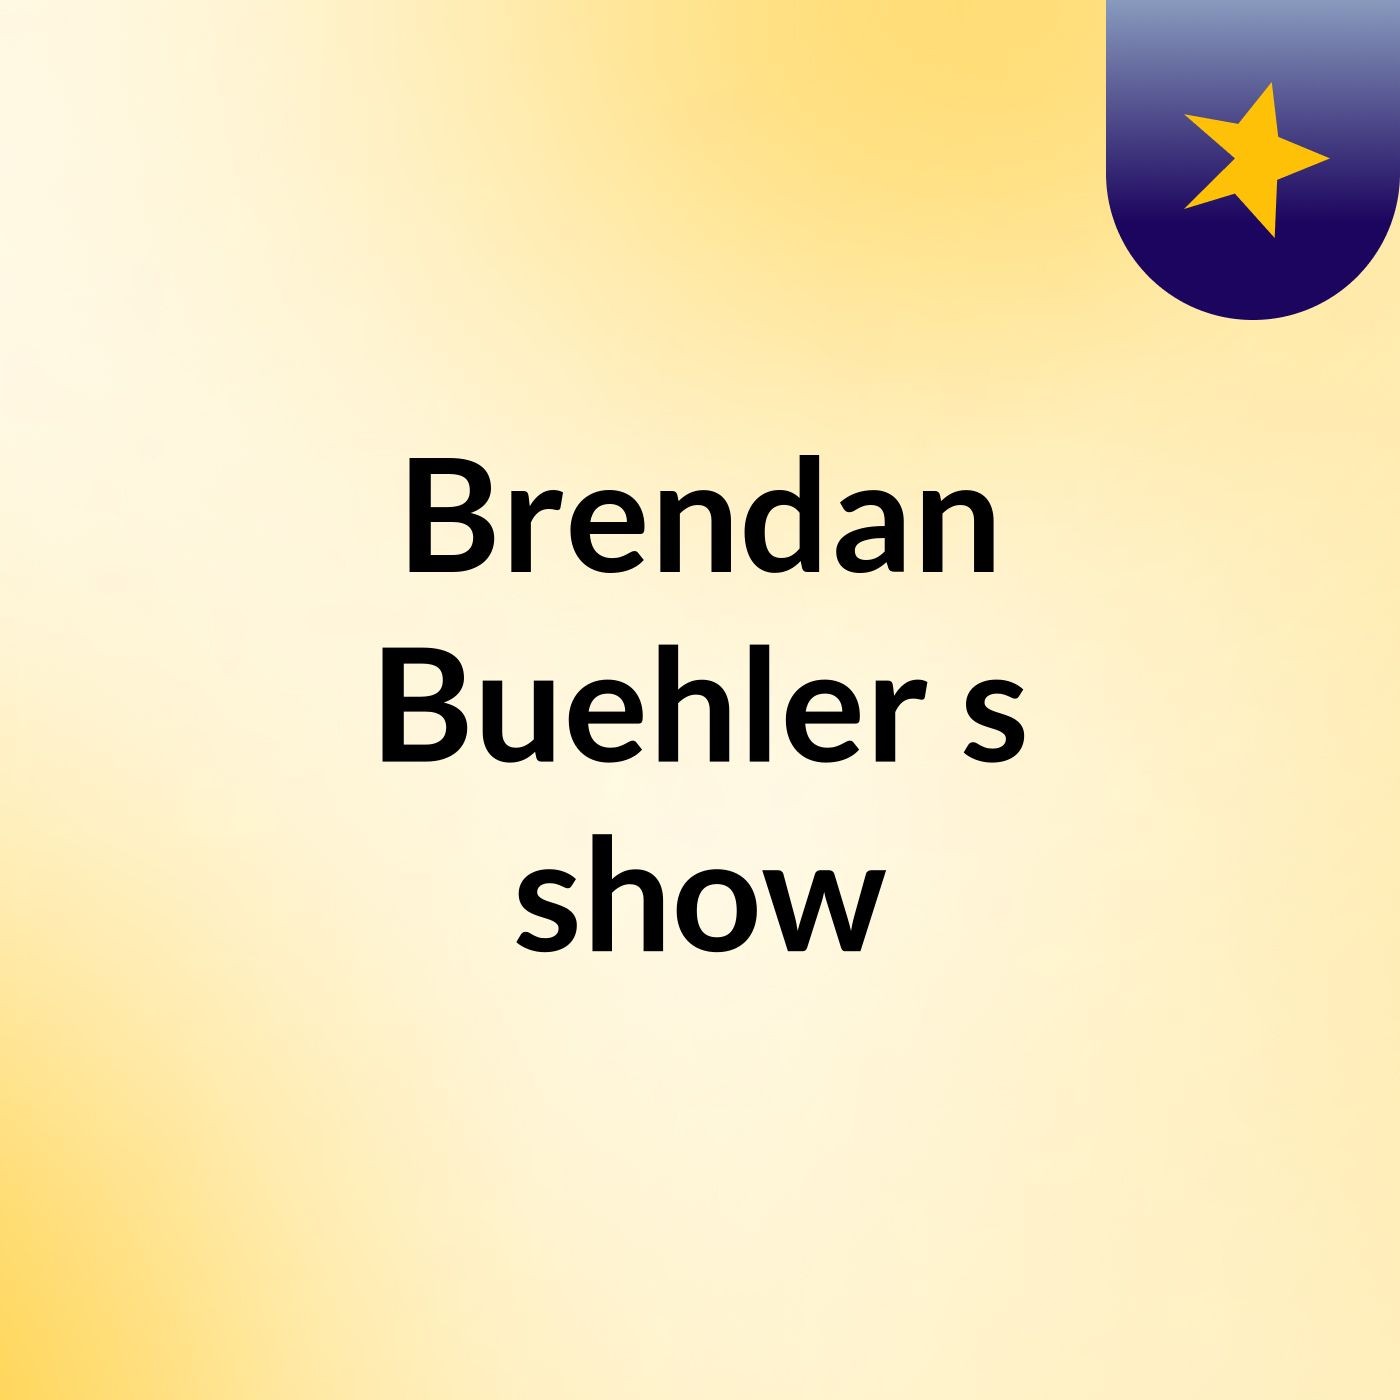 Brendan Buehler's show